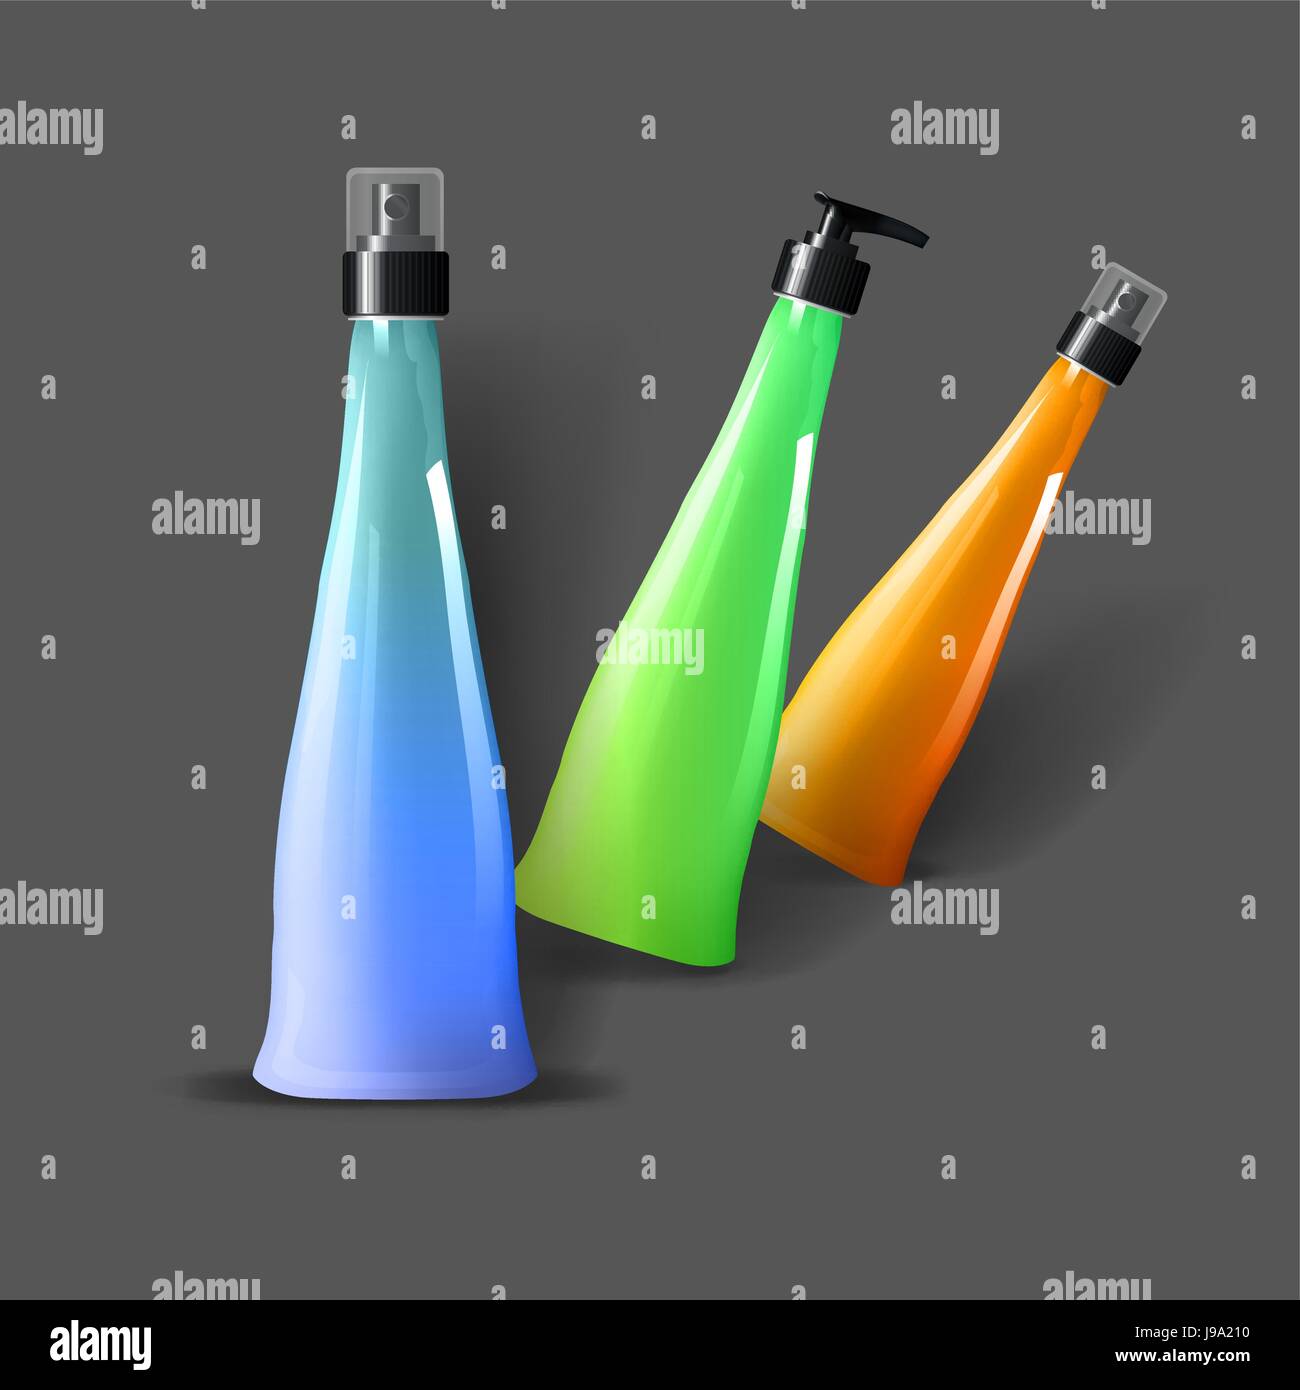 Mockup modello per il branding e il design dei prodotti. Isolato realistico di bottiglie di plastica con erogatore spray e design esclusivo. Illustrazione Vettoriale